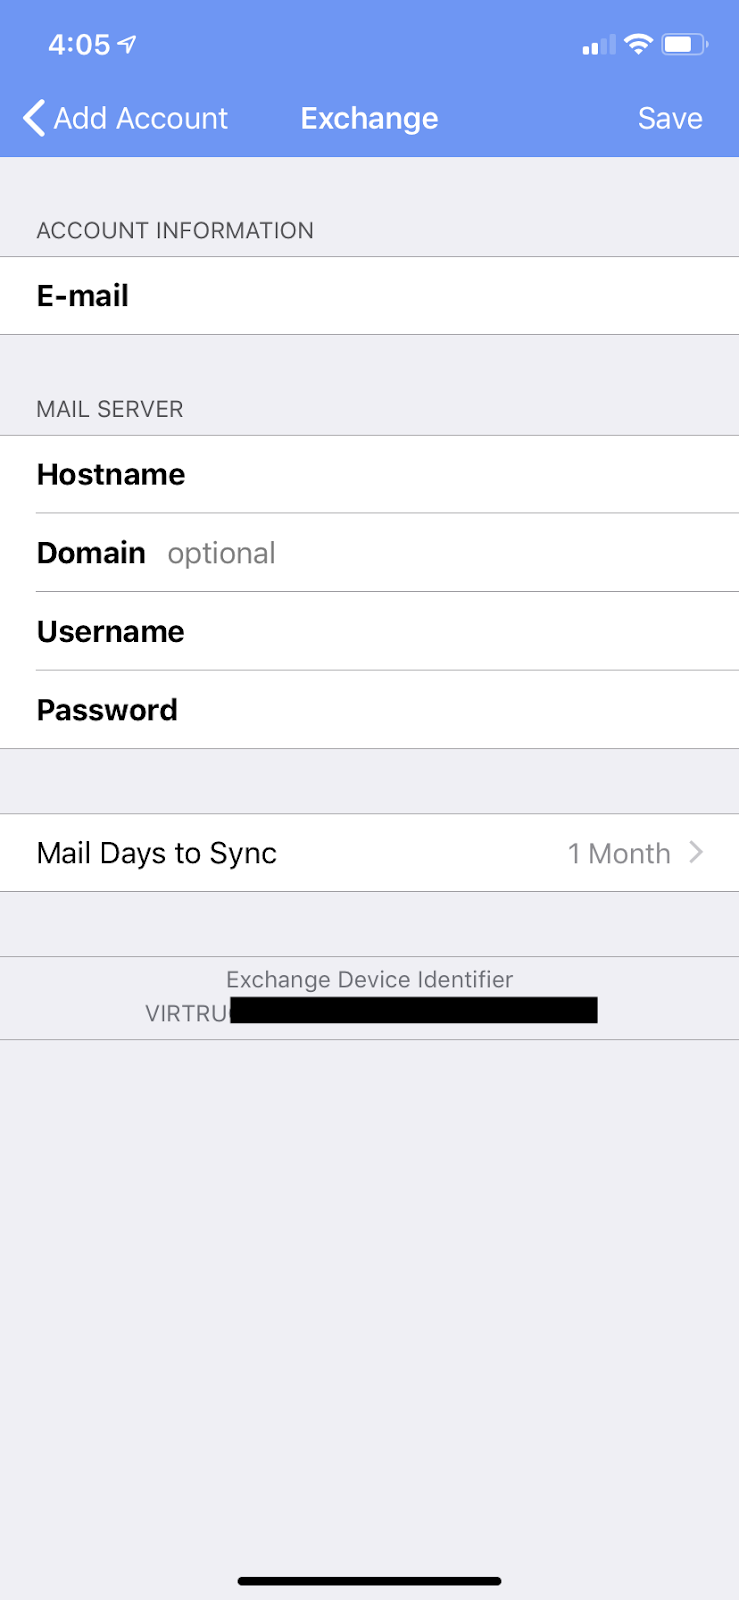 Exchange settings screen on Virtru iOS app